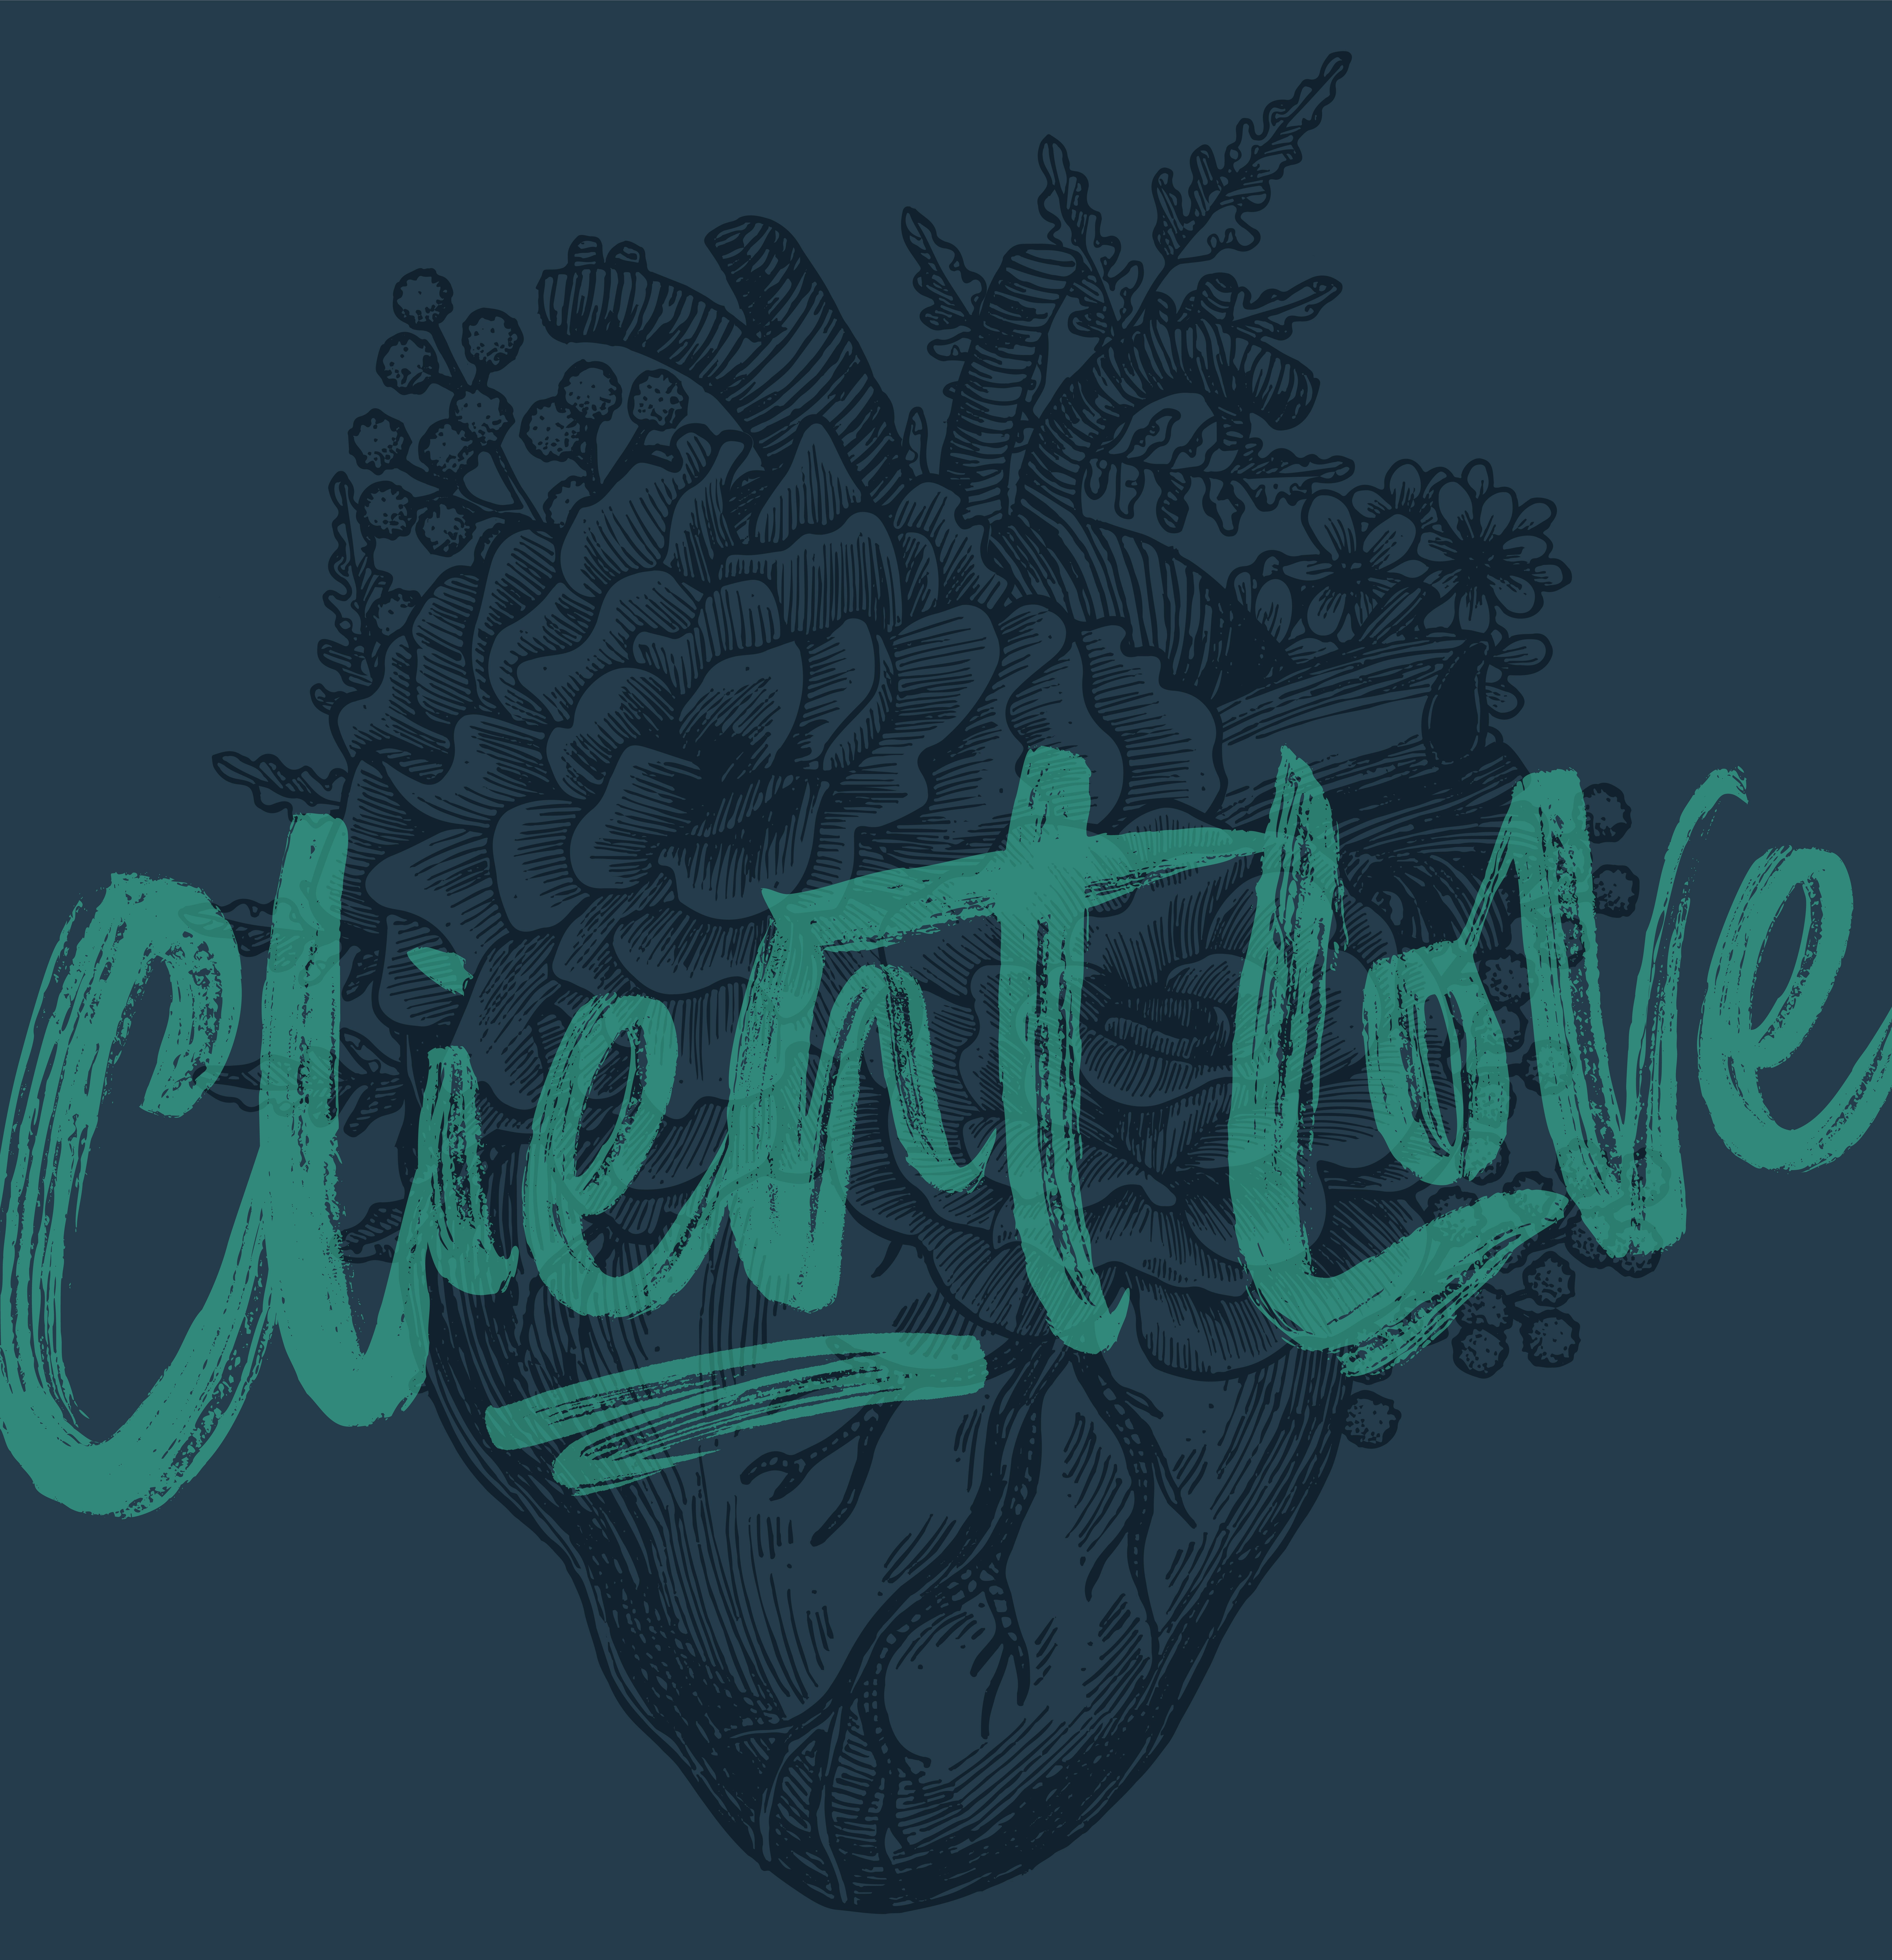 ClientLove_vertical-01